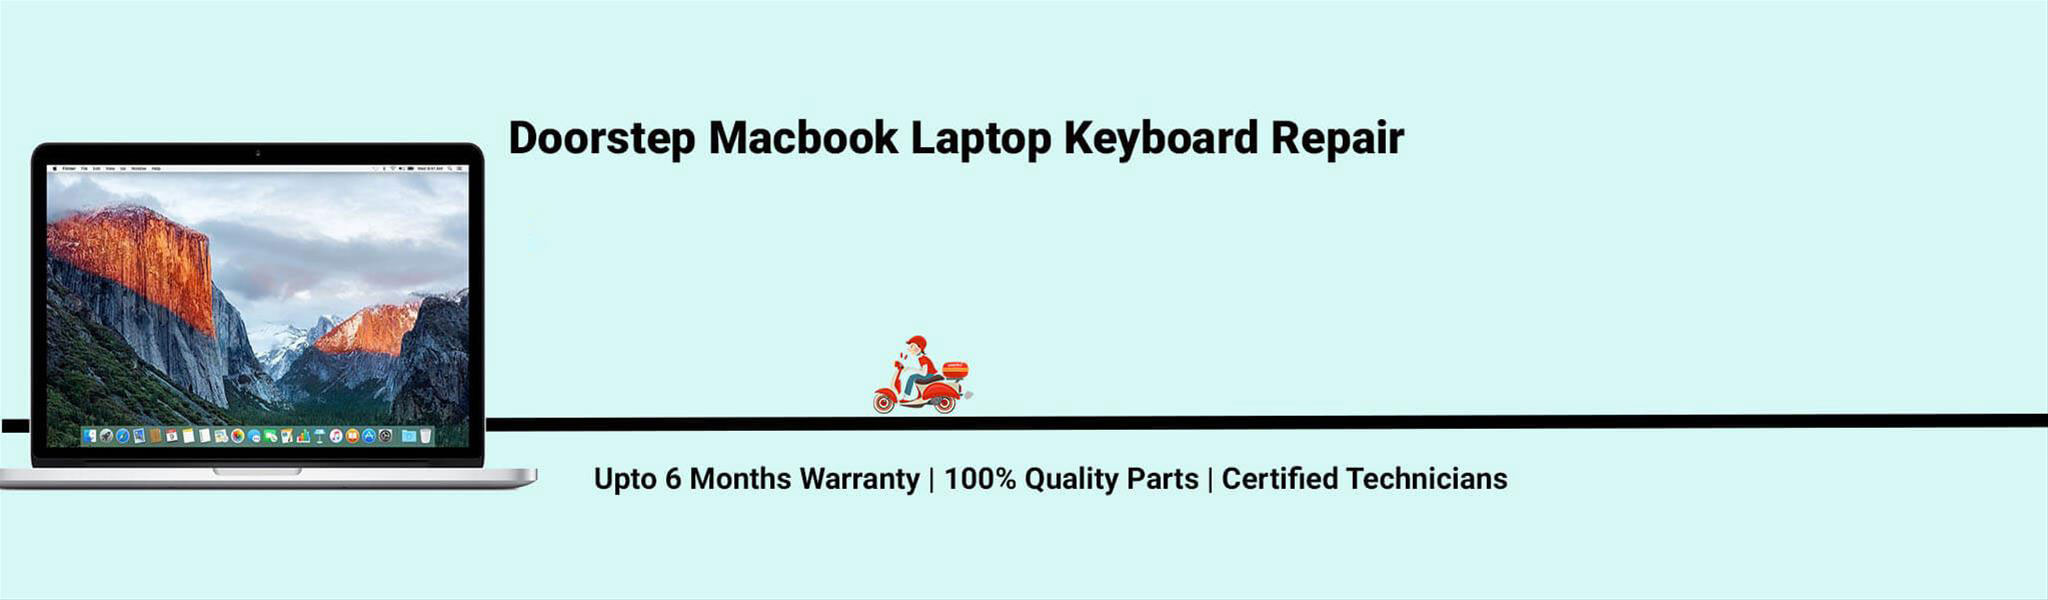 macbook-laptop-keyboard-repair.jpg